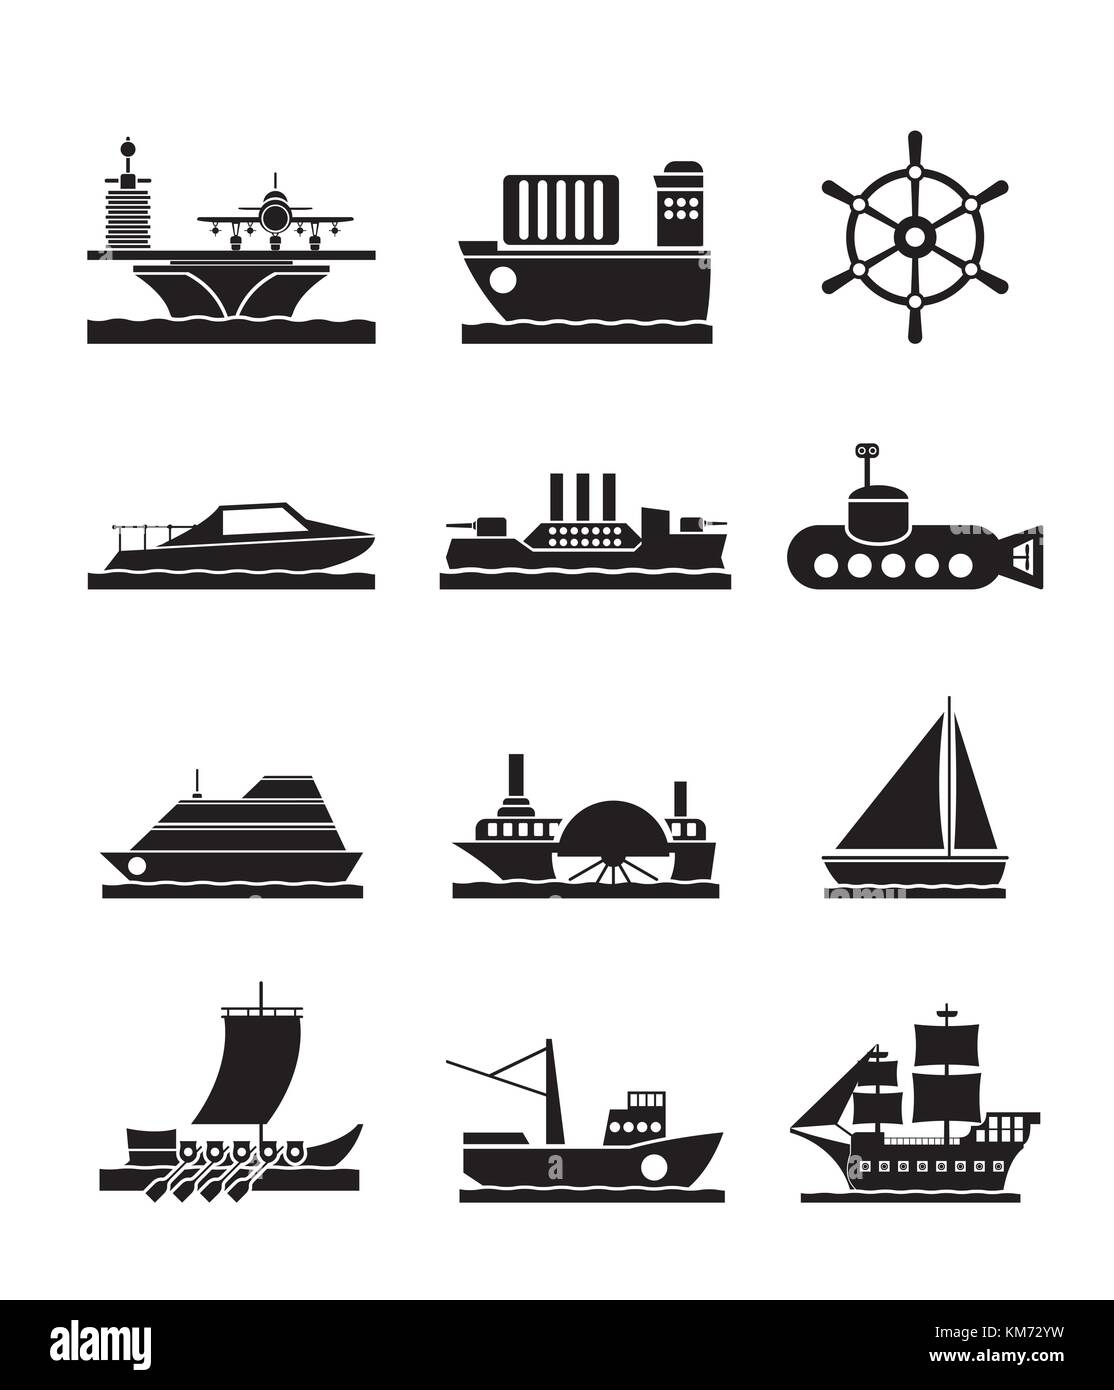 Los diferentes tipos de botes y barcos e iconos - vector conjunto de iconos  Imagen Vector de stock - Alamy